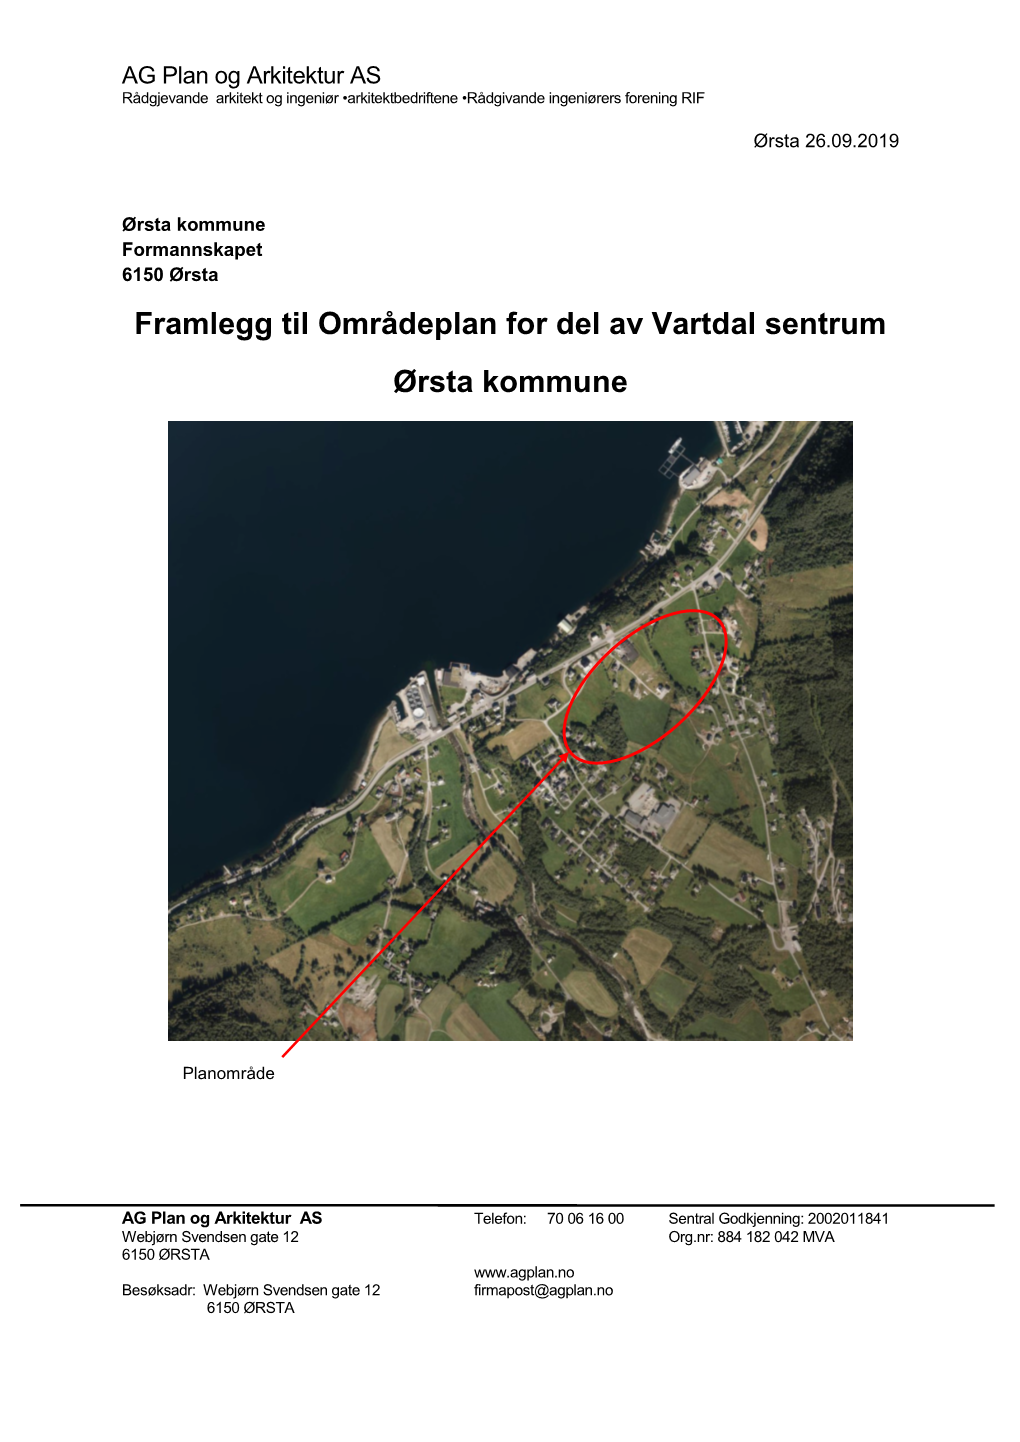 Framlegg Til Områdeplan for Del Av Vartdal Sentrum Ørsta Kommune